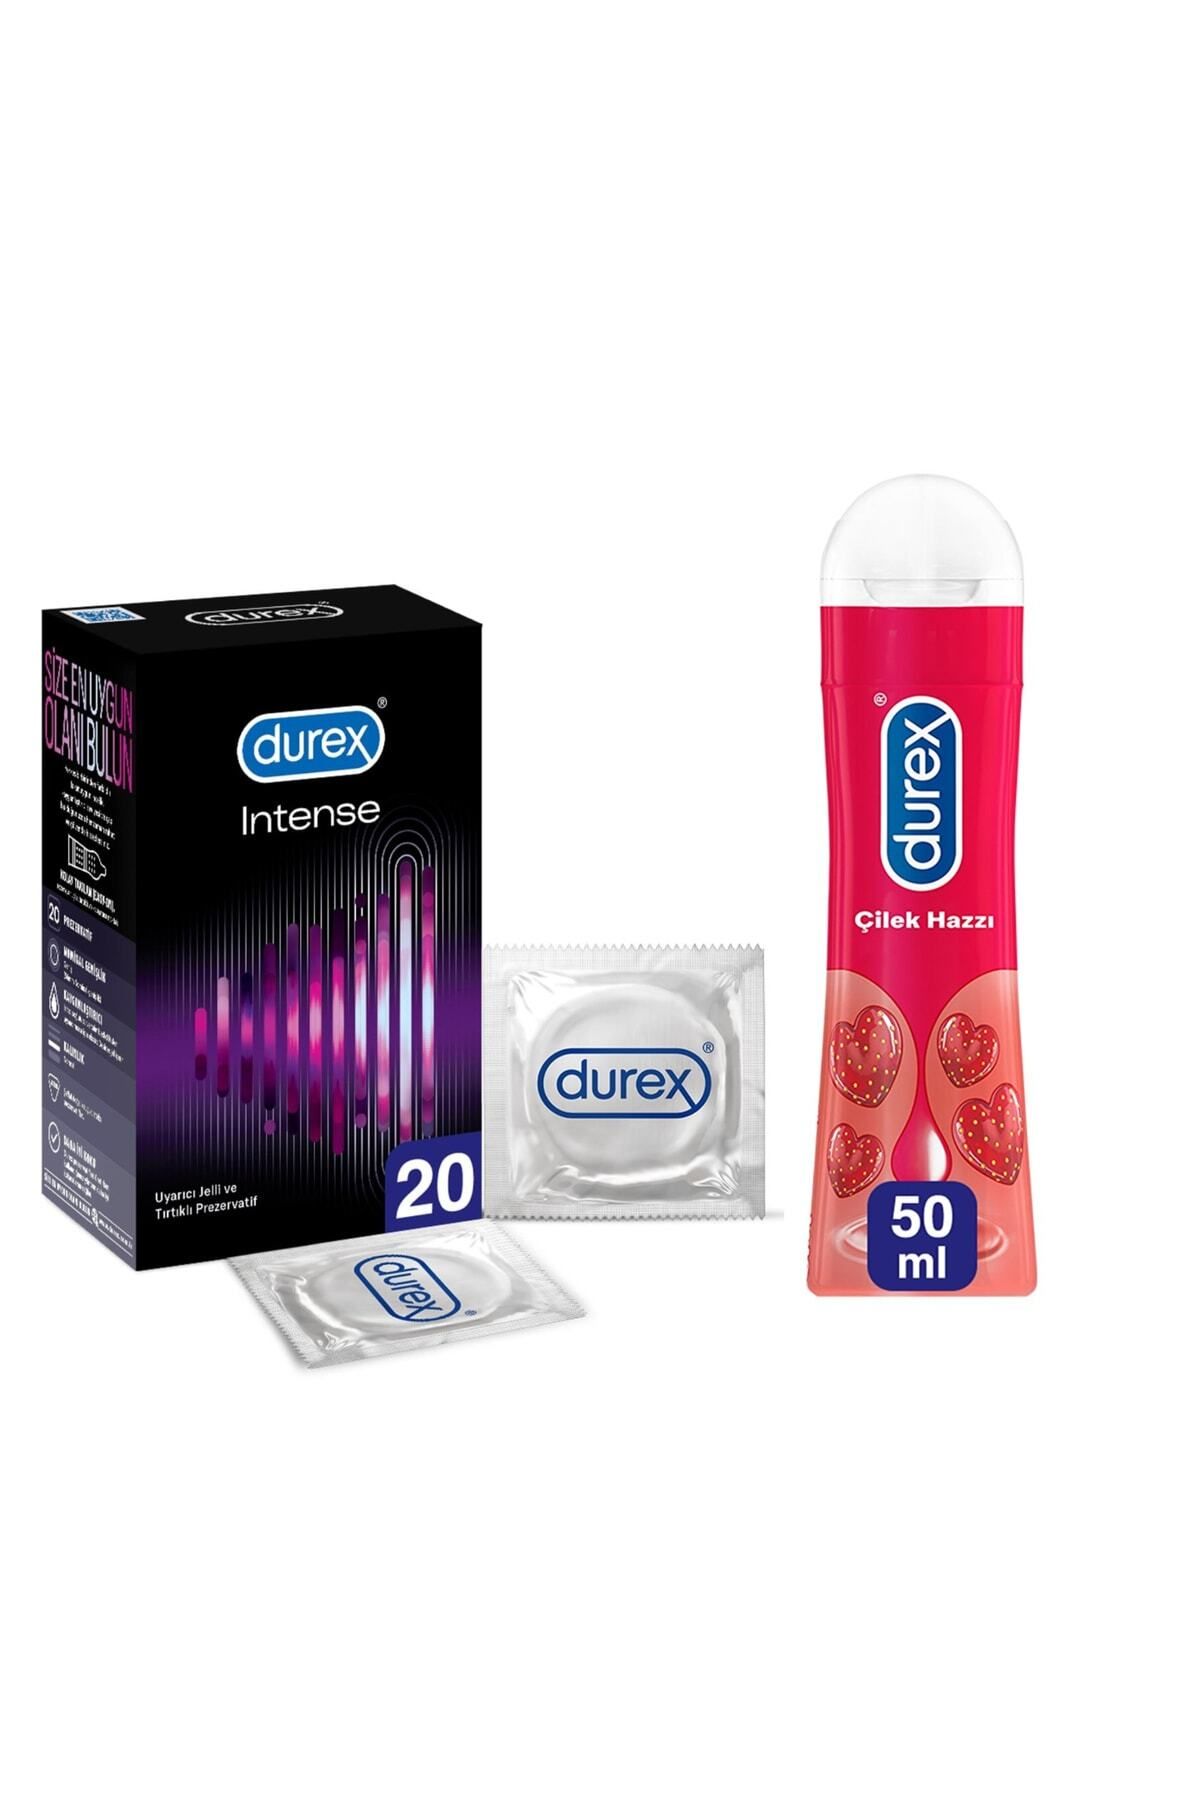 Durex Intense 20'lı Uyarıcı Jelli Ve Tırtıklı Prezervatif Çilek Kayganlastırıcı Jel